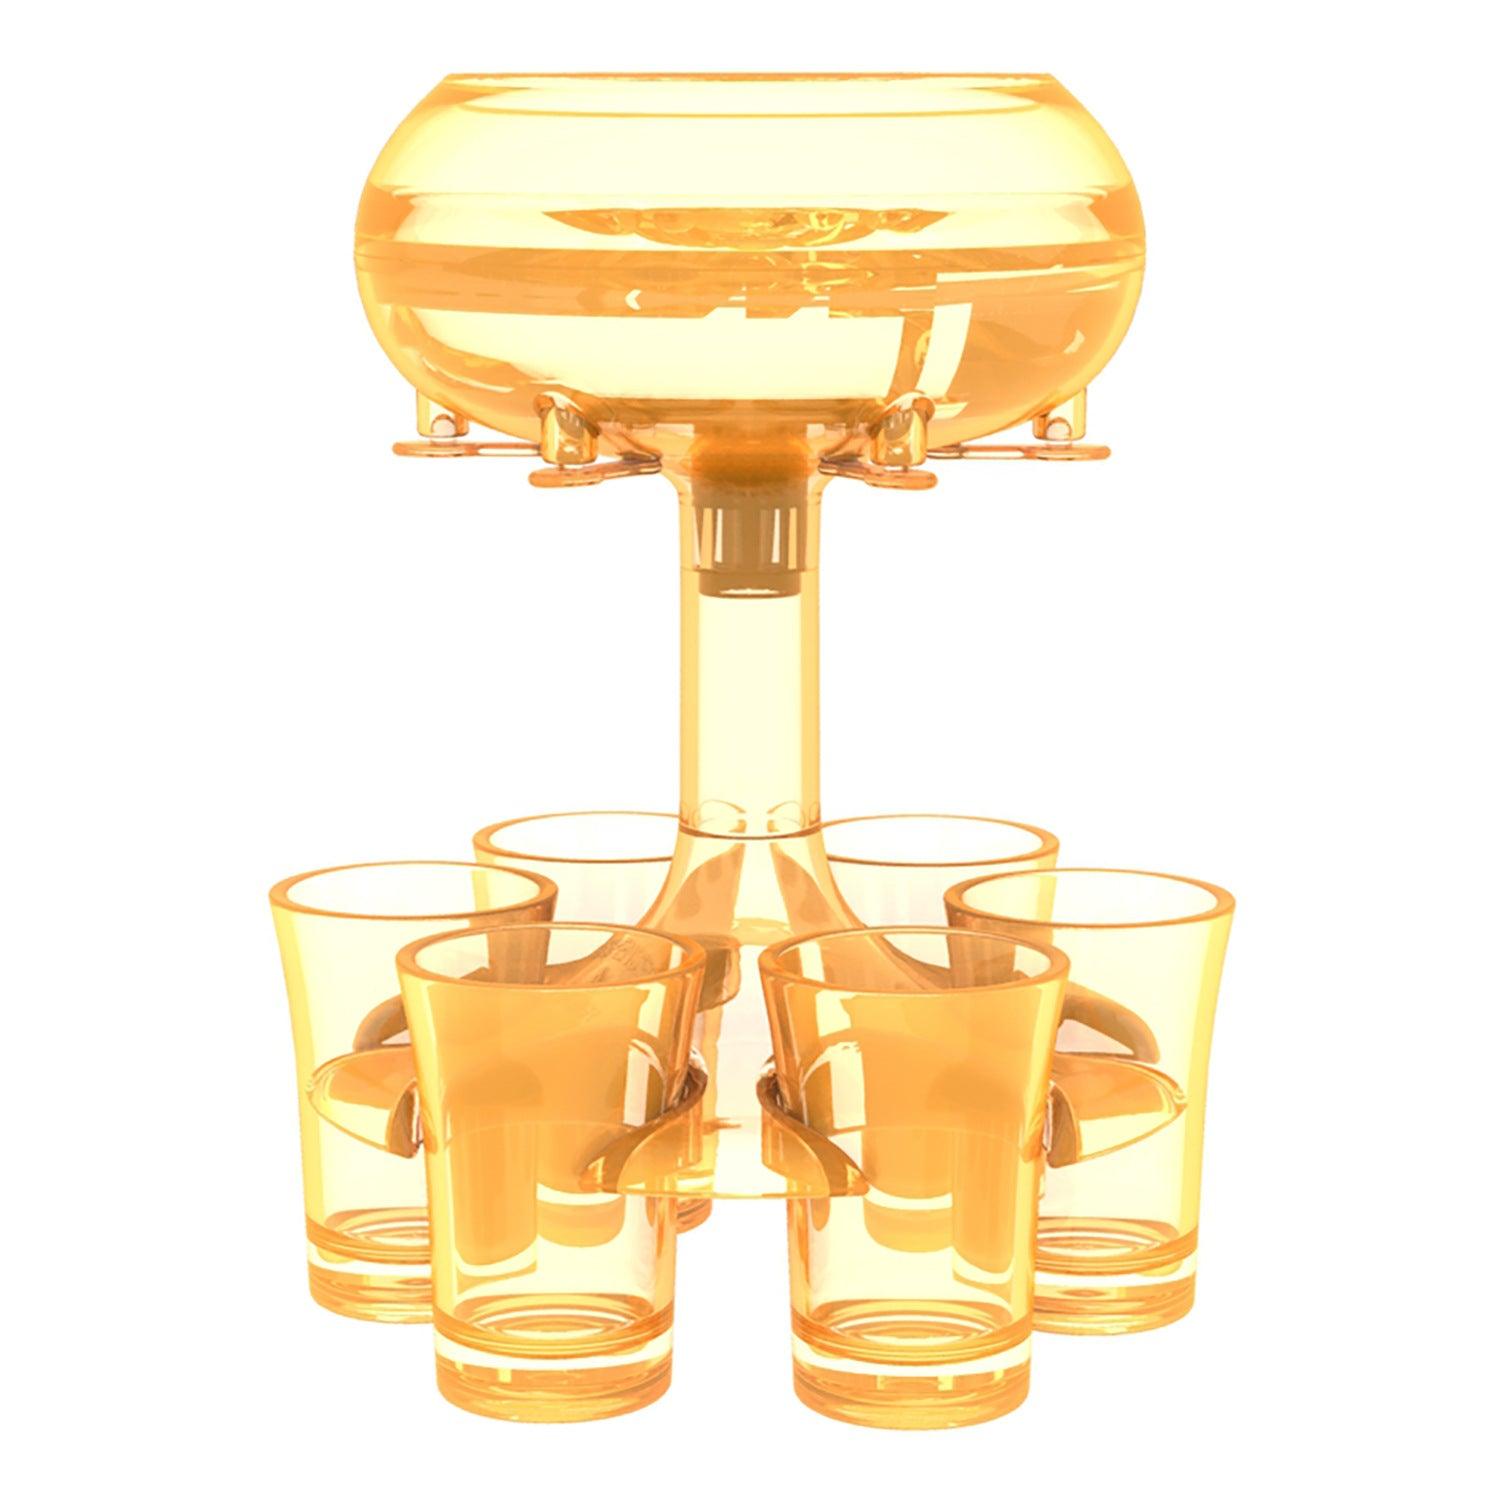 Oranje shotglas dispenser voor een feestelijke touch, brengt kleur en plezier in elke setting.